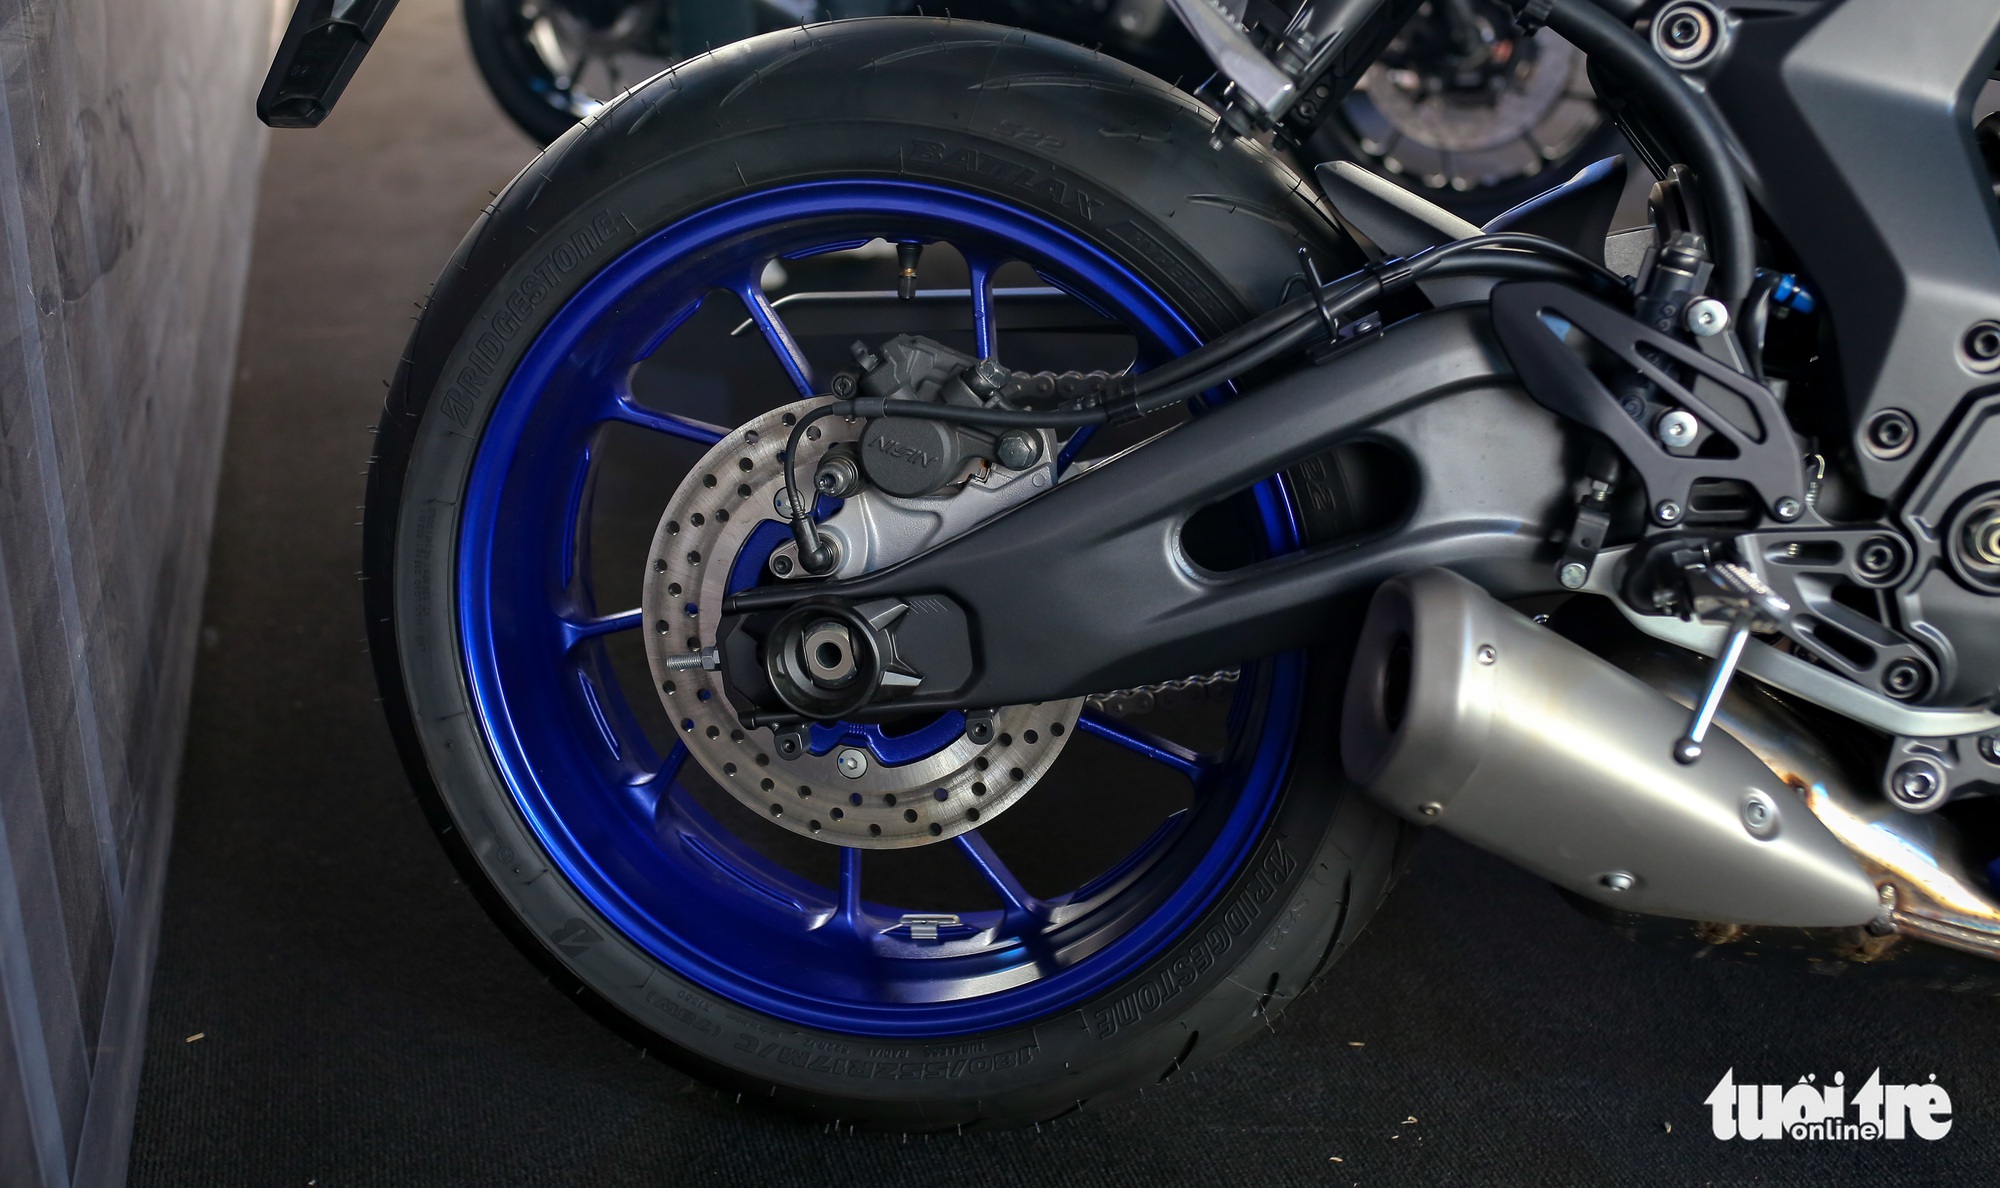 Yamaha YZF-R7 - Sportbike tầm trung giá 269 triệu đồng, thay thế 'huyền thoại' R6 - Ảnh 8.